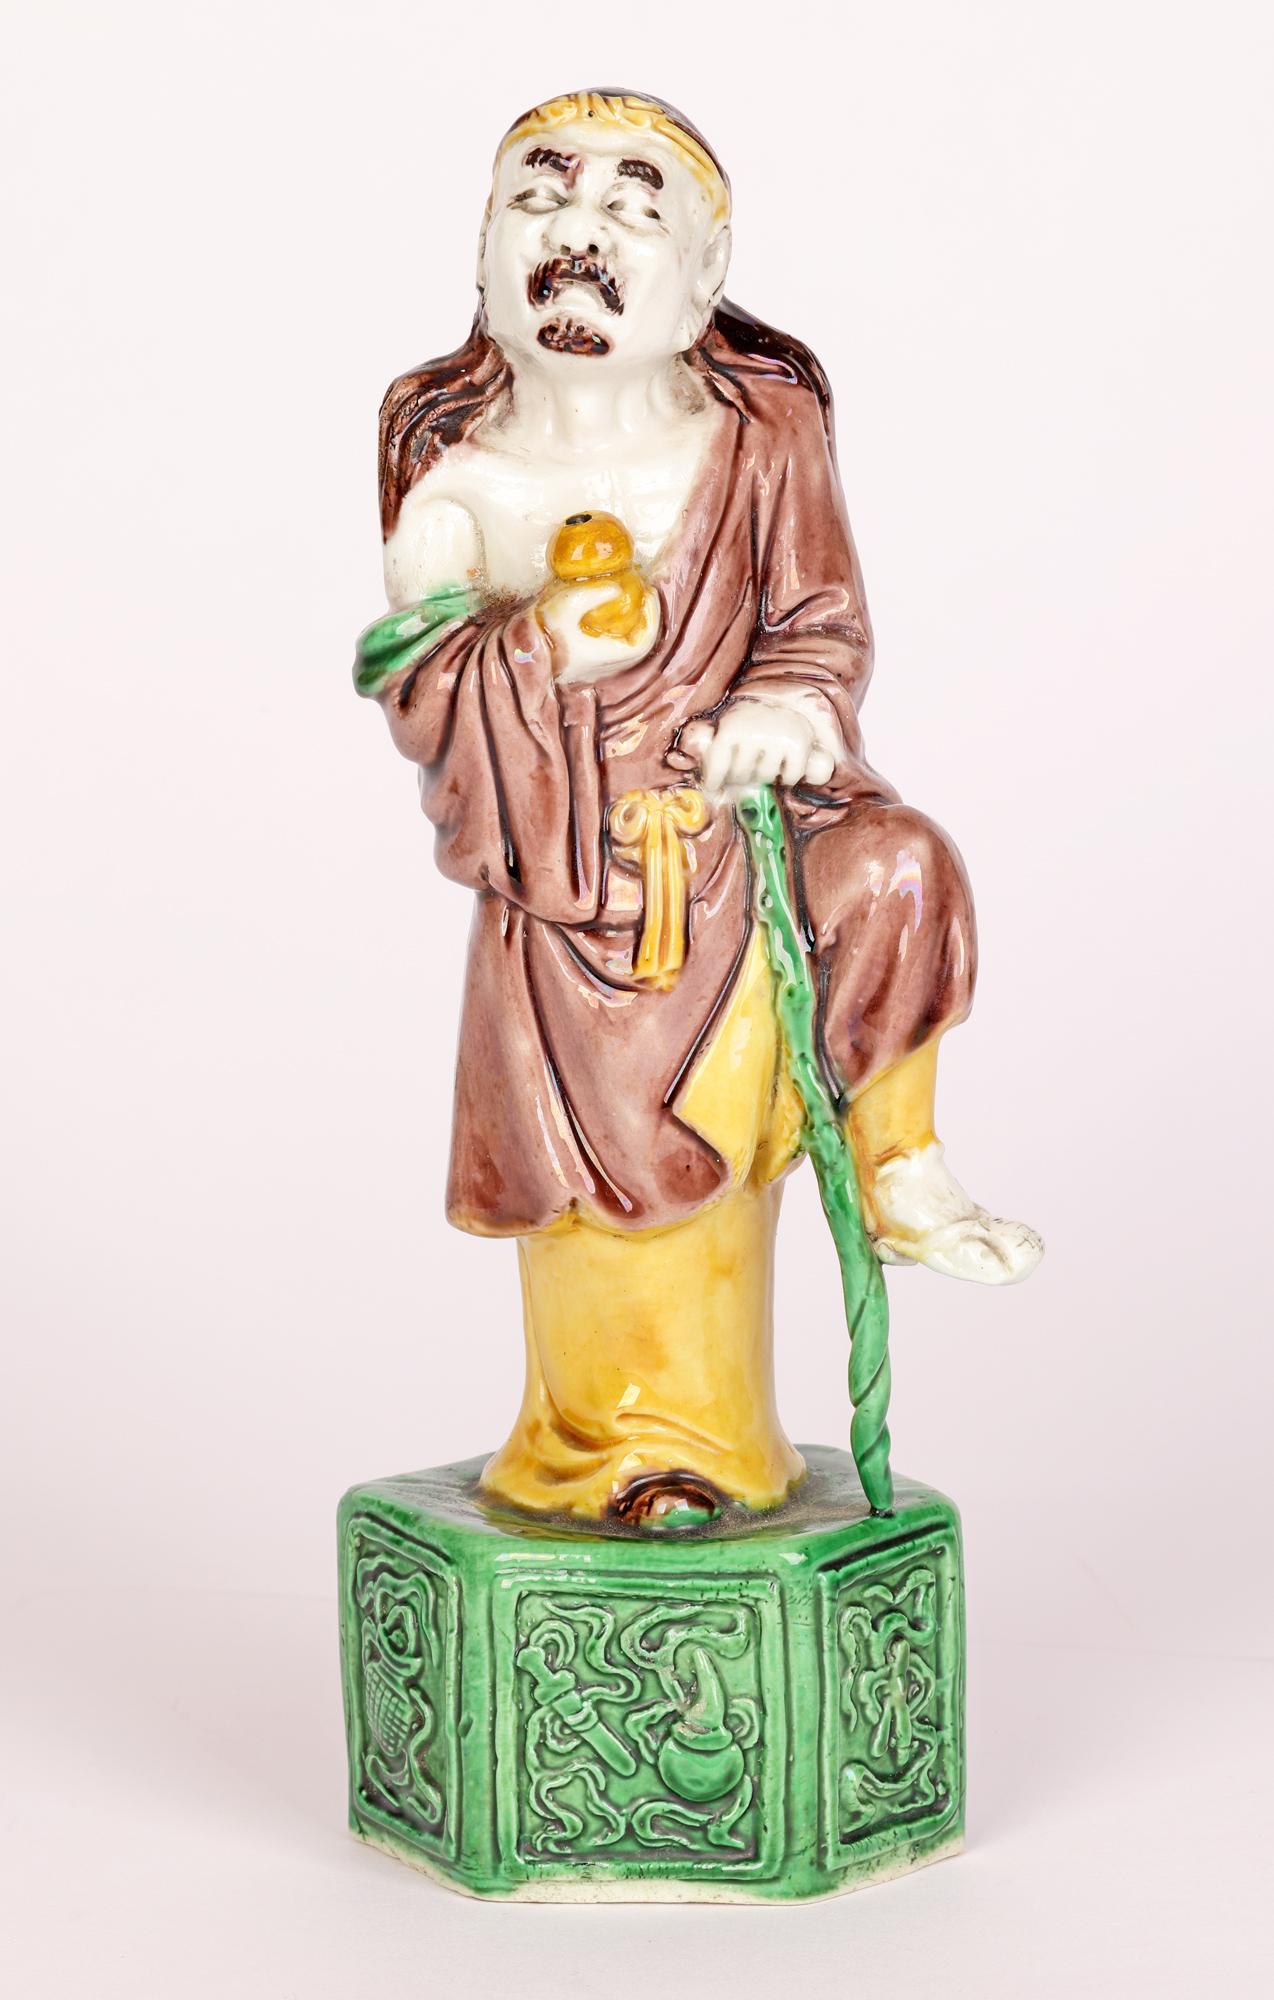 Eine feine antike chinesische Porzellanfigur des Unsterblichen, verziert mit Sancai-Glasuren aus dem 19. Jahrhundert. Die Figur steht erhöht auf einem sechseckigen Sockel und ist mit einer locker sitzenden Hose und einem um die Taille gebundenen